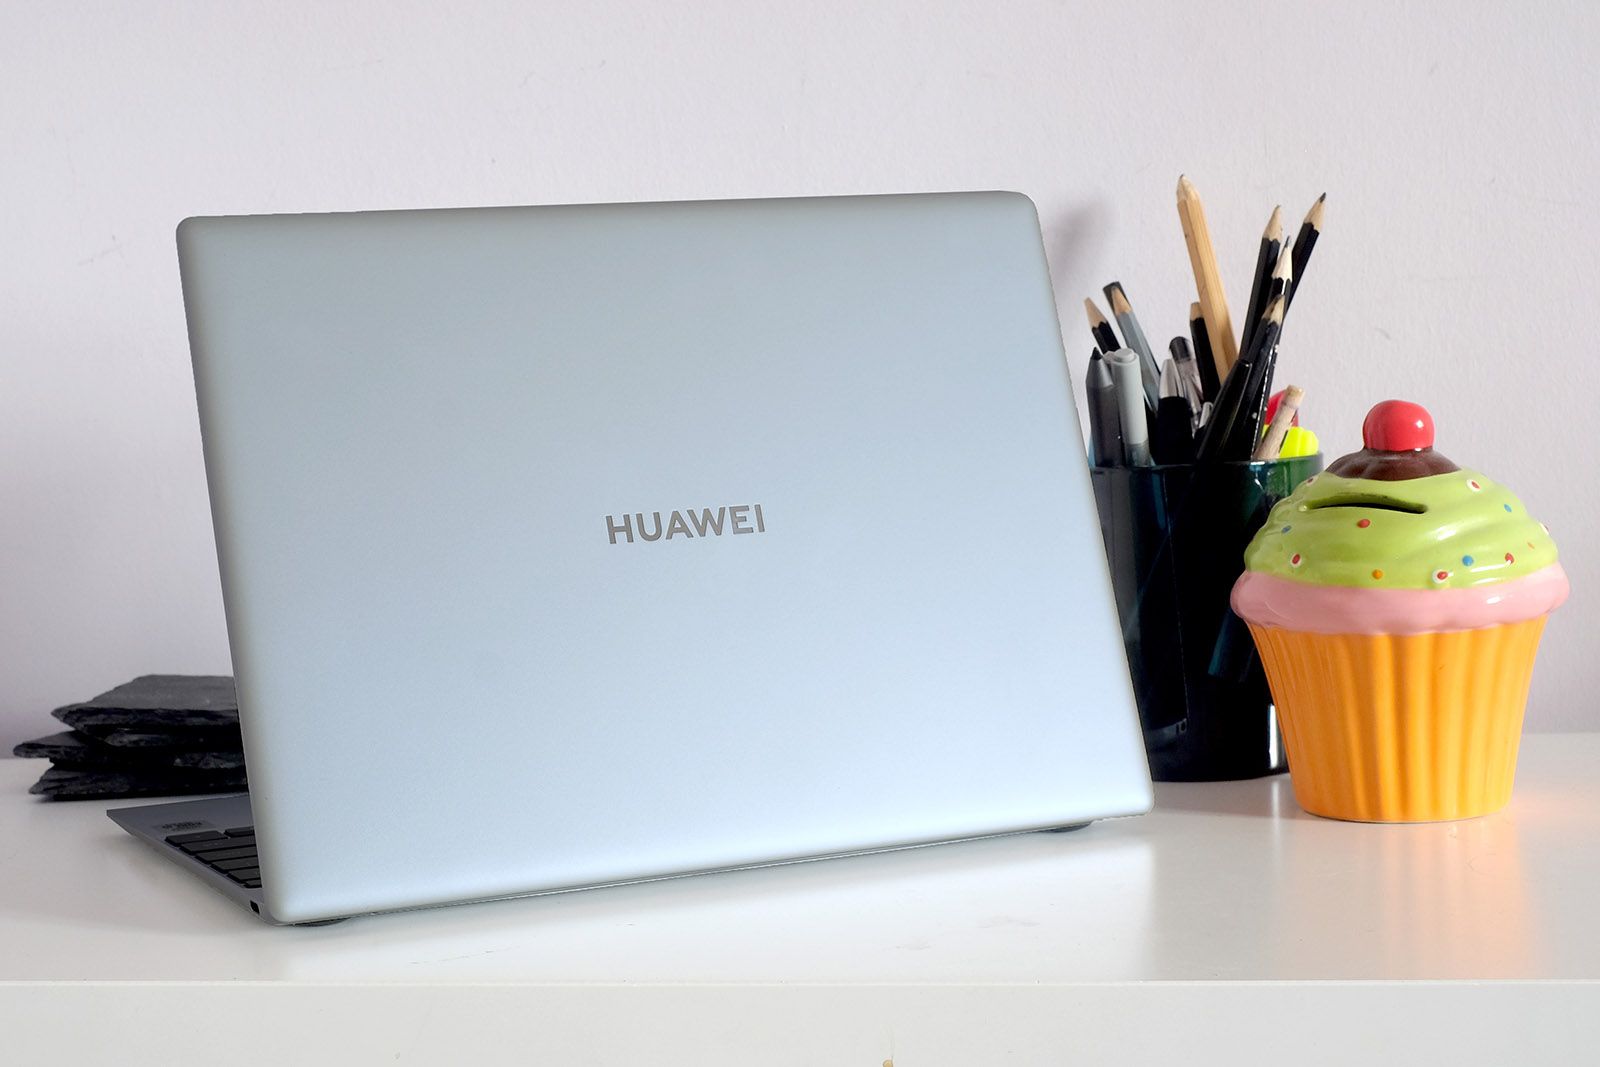 Huawei Matebook X review photo 9